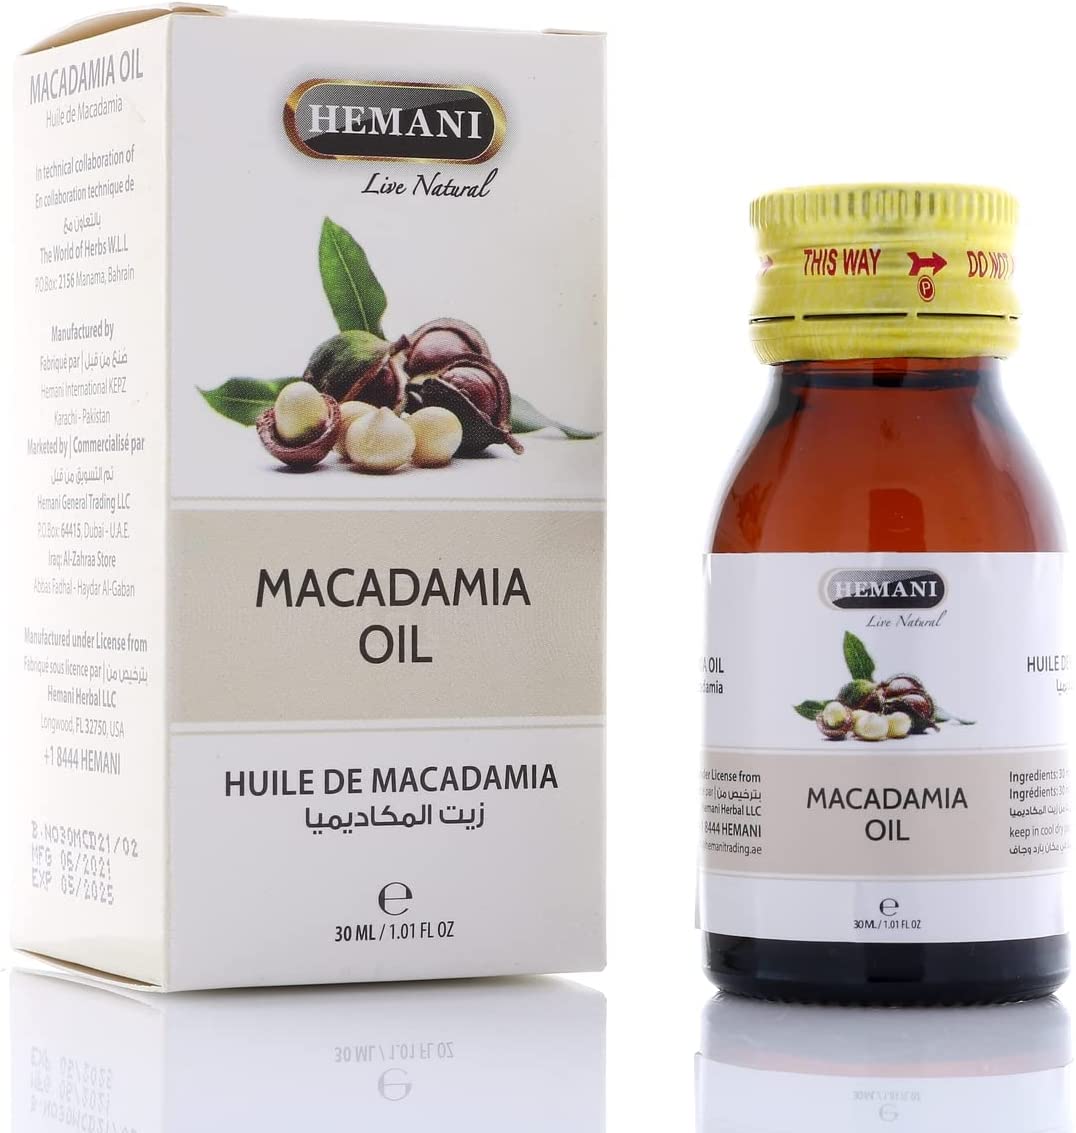 Hemani Macadamia Oil